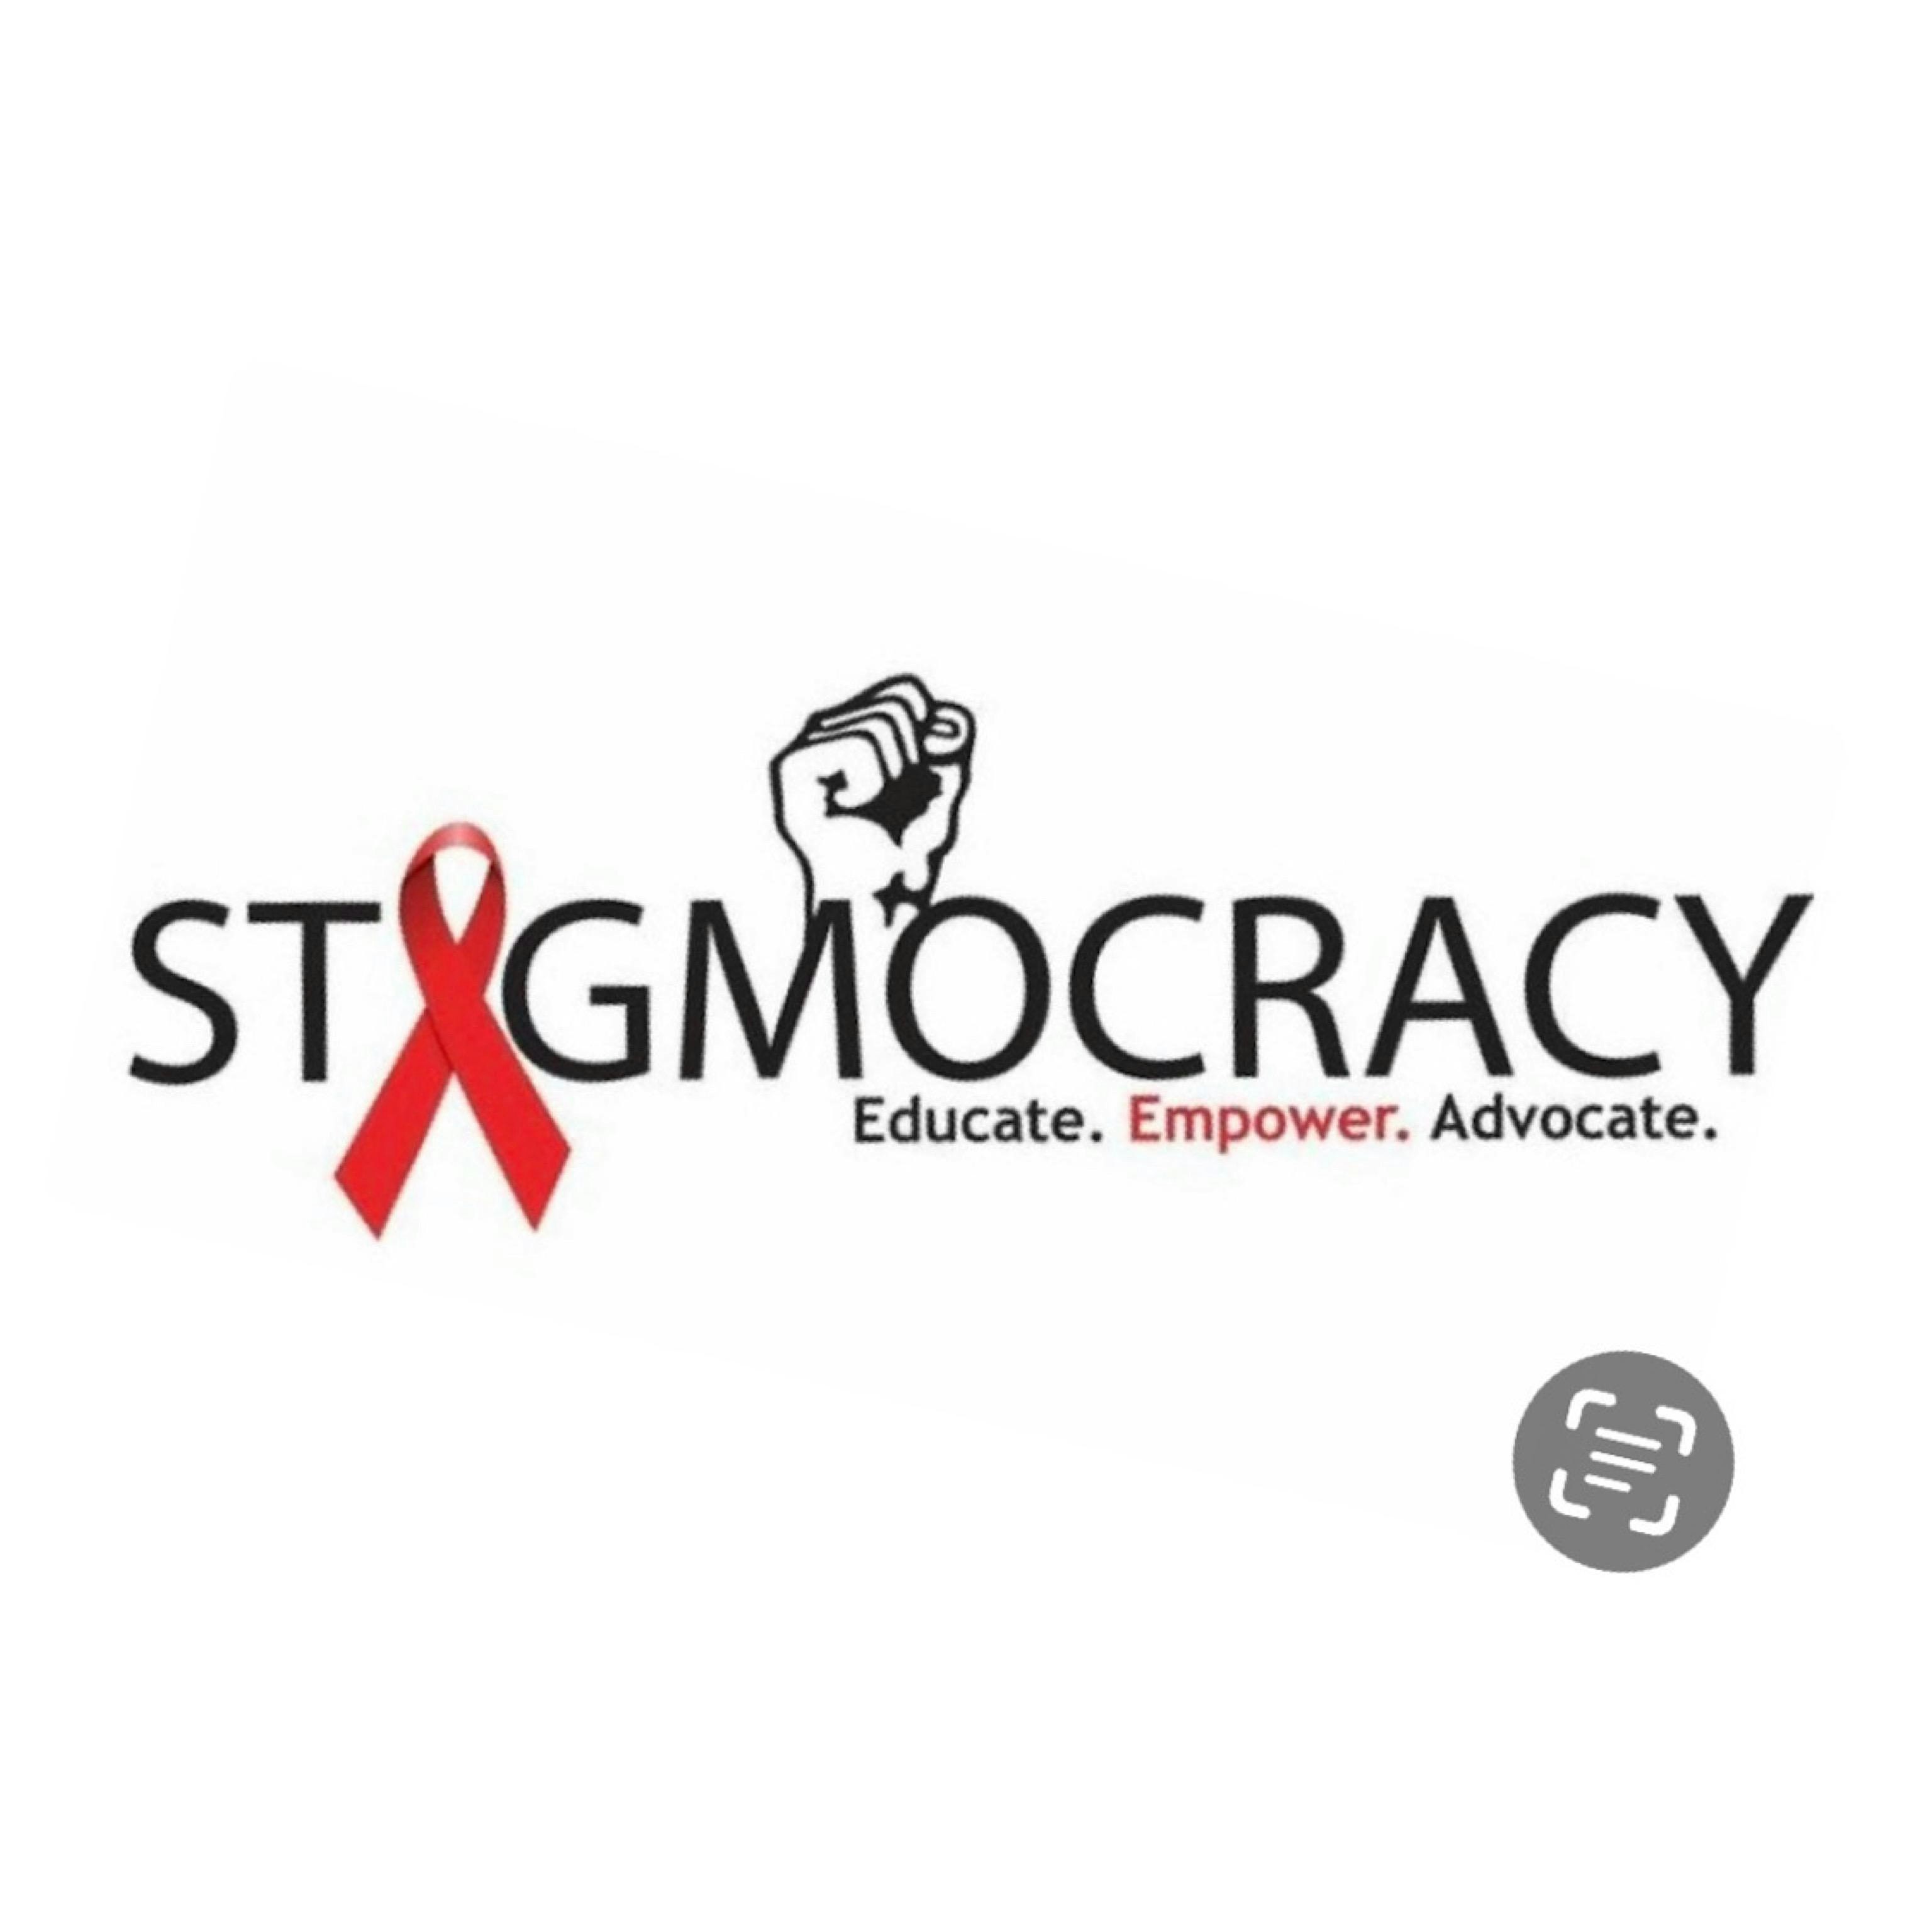 Stigmocracy Organization